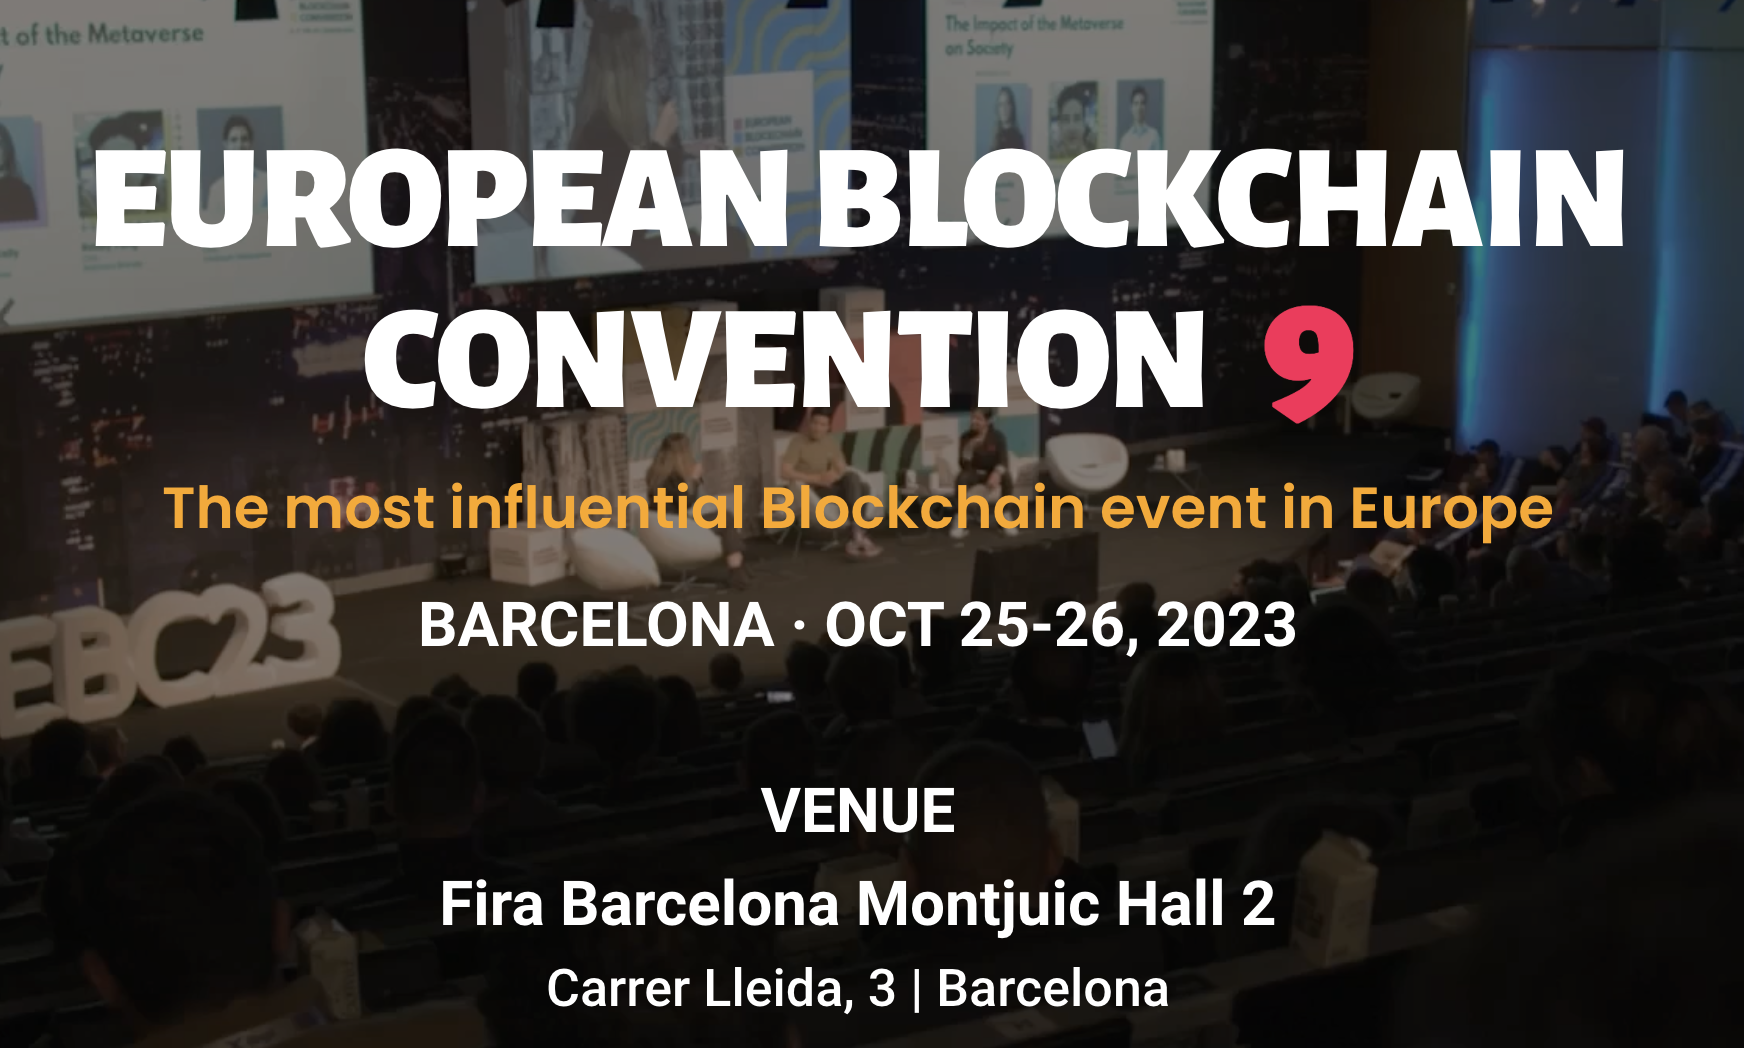 European Blockchain Convention 